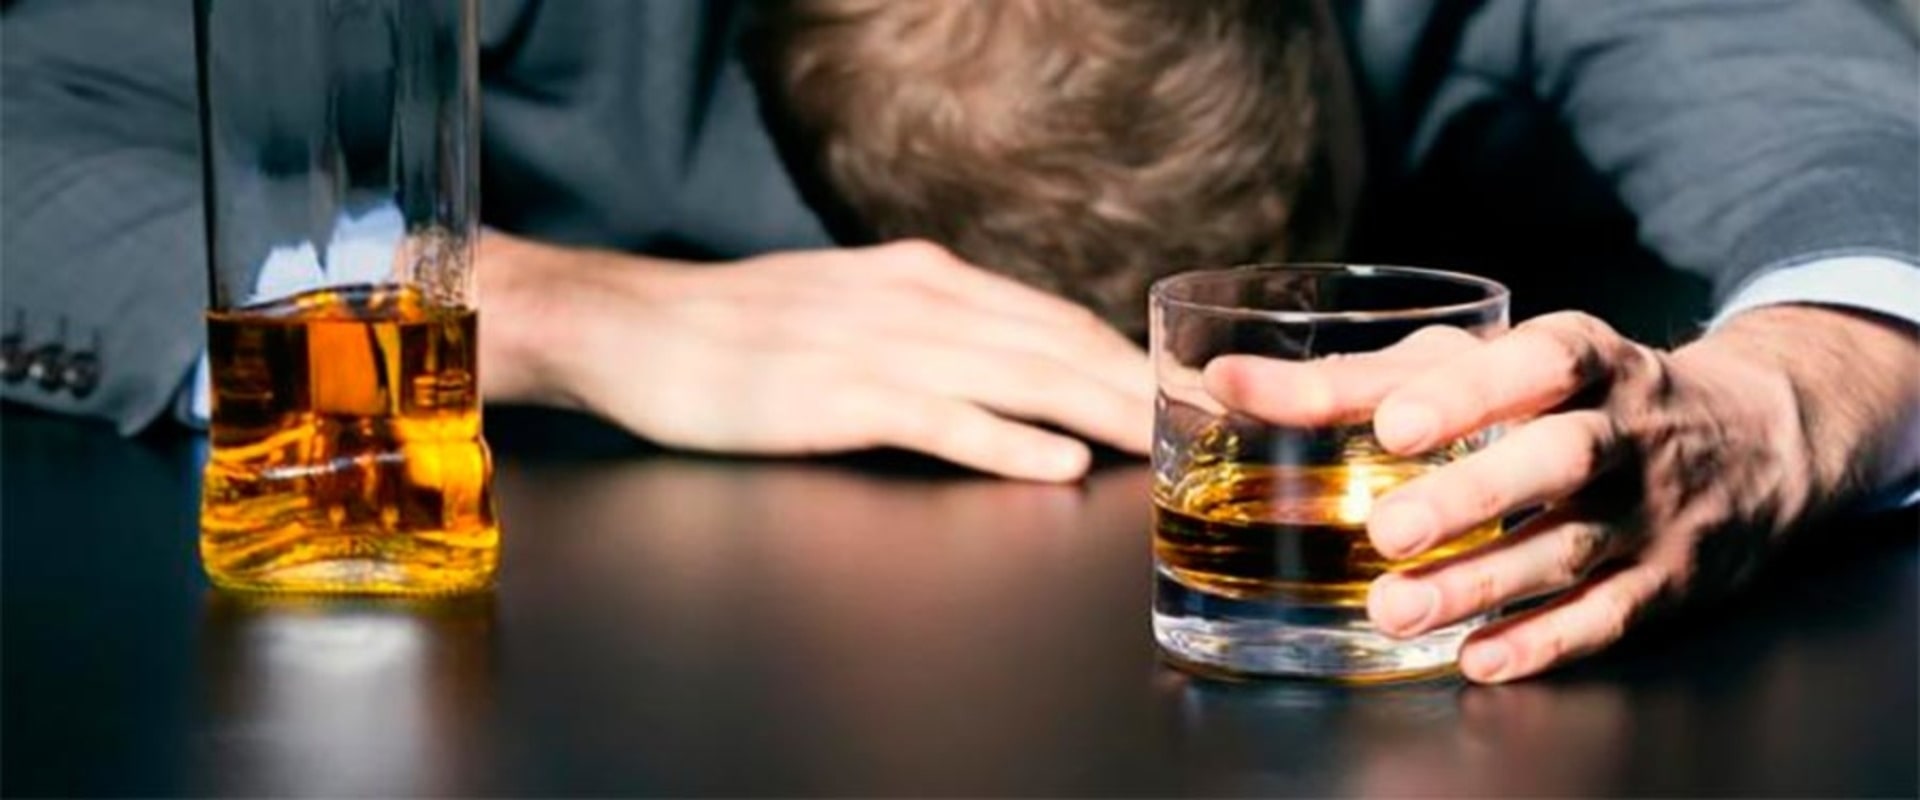 Мужчина и алкоголь-последствия